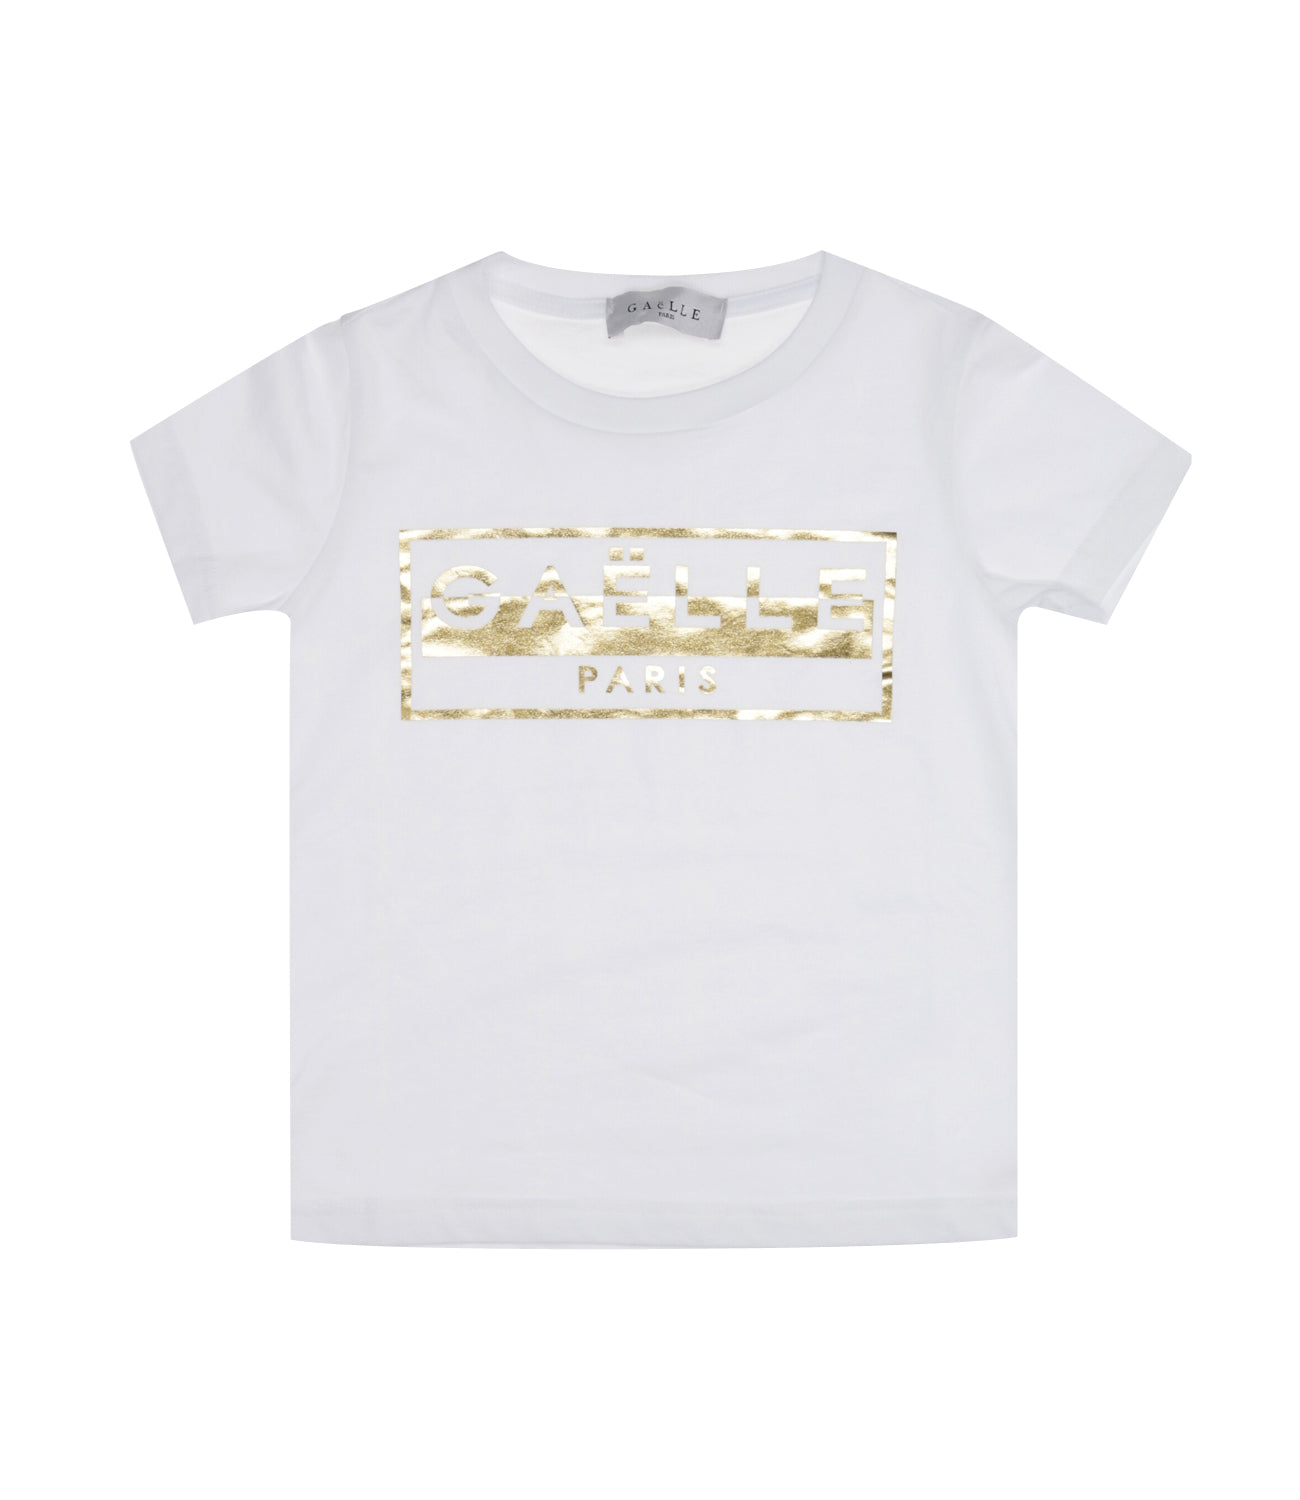 Gaelle Paris Kids | Optical White T-Shirt